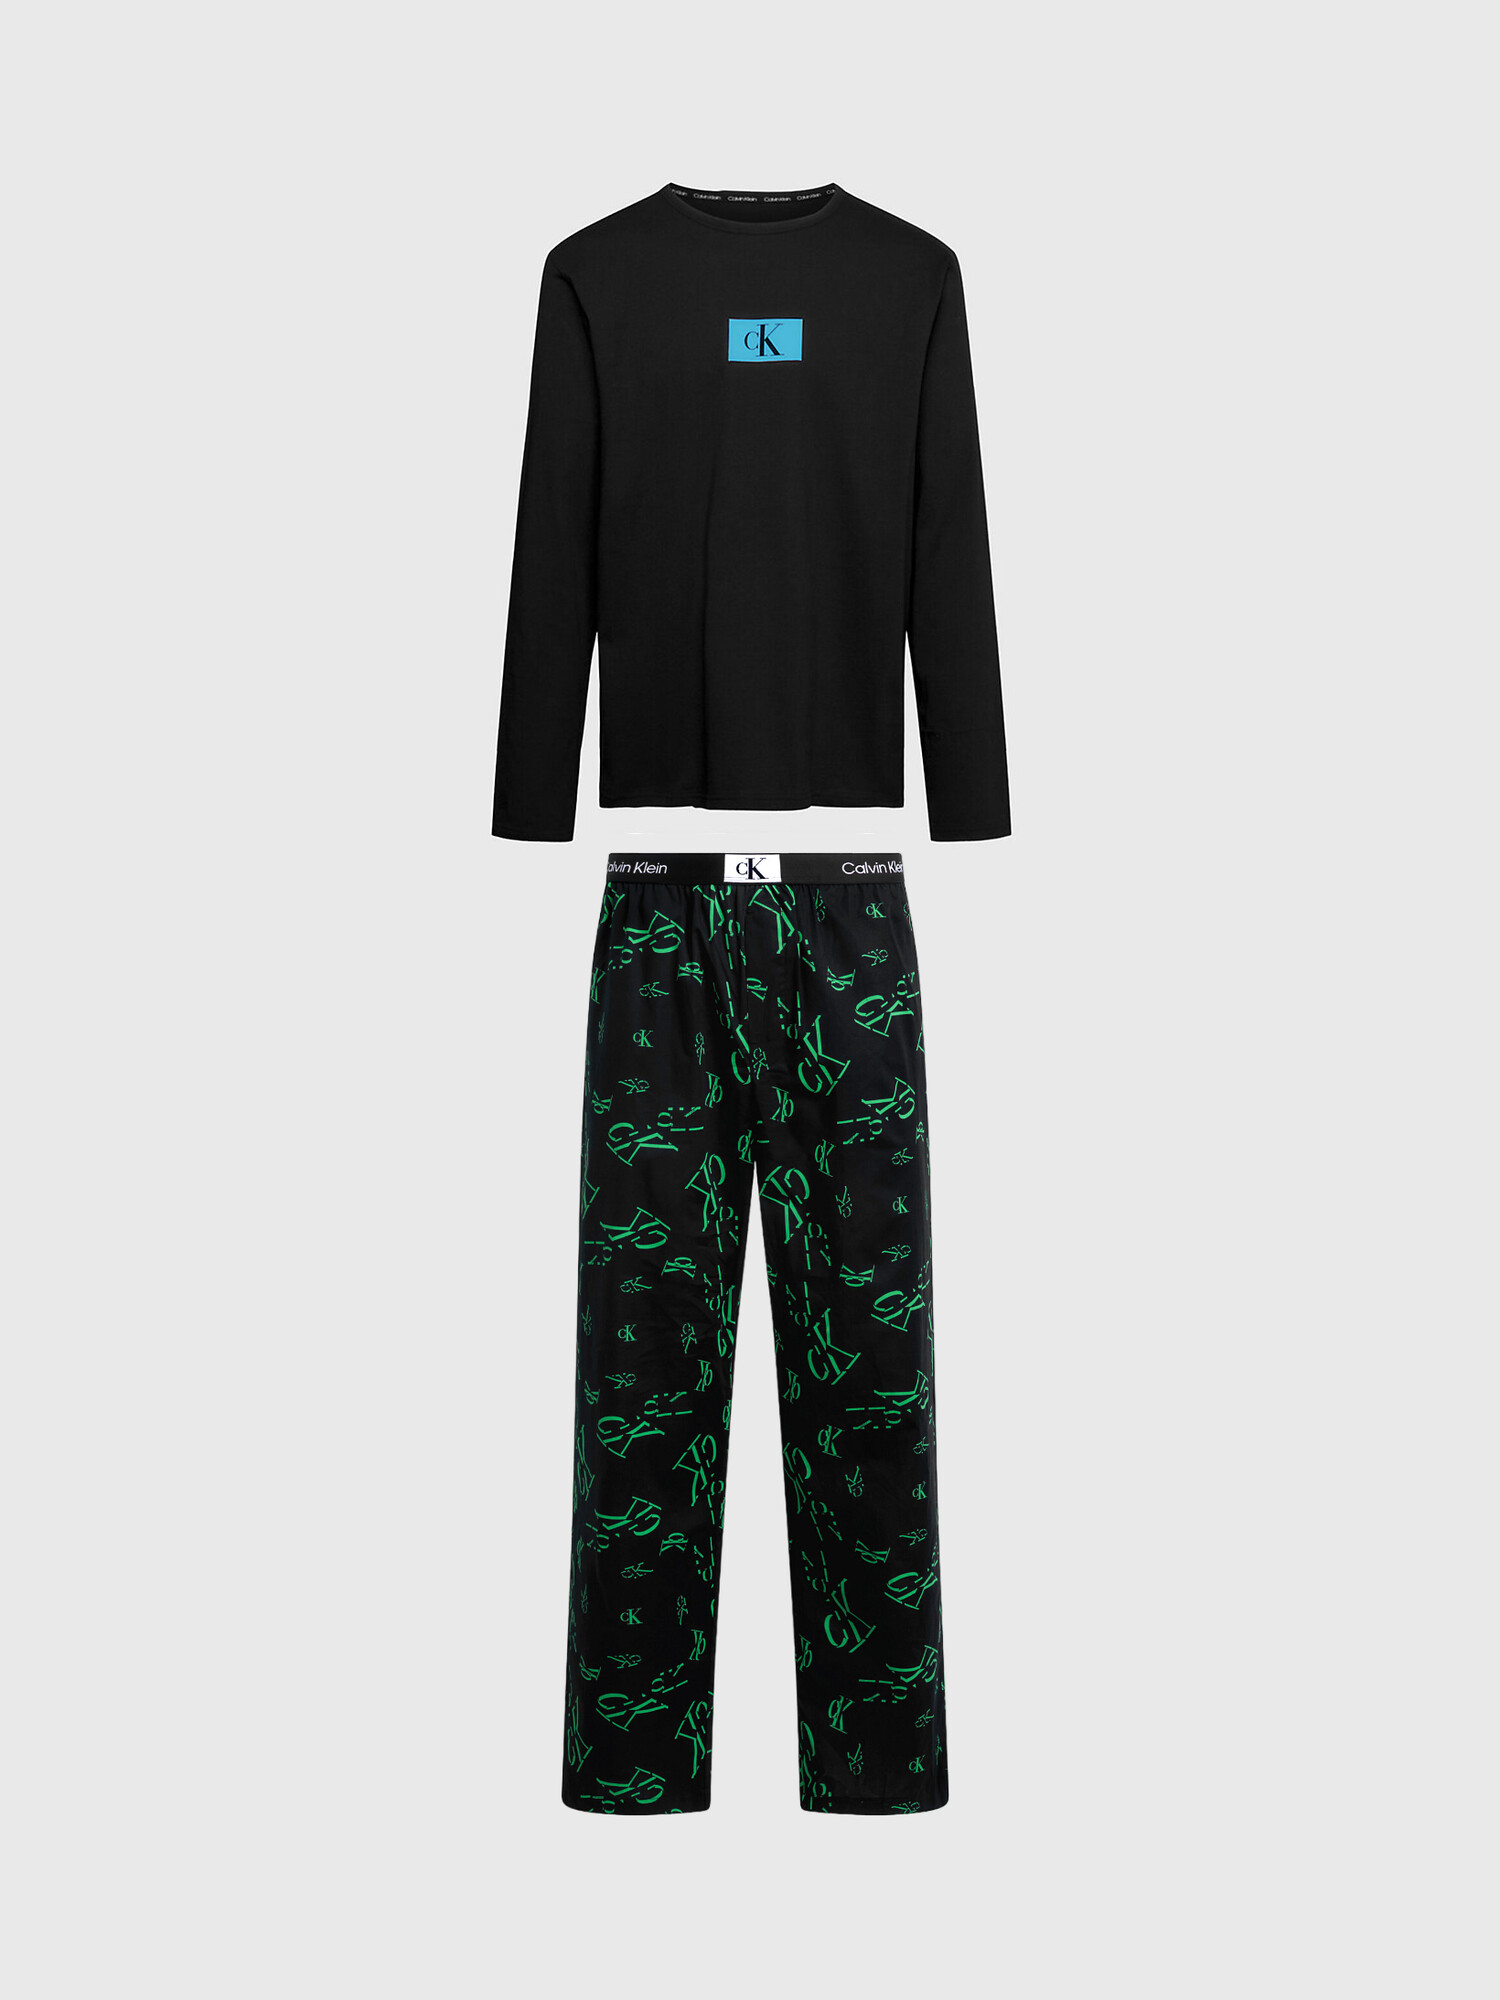 Pánské pyžamo 000NM2526E I2R černé s potiskem - Calvin Klein XL